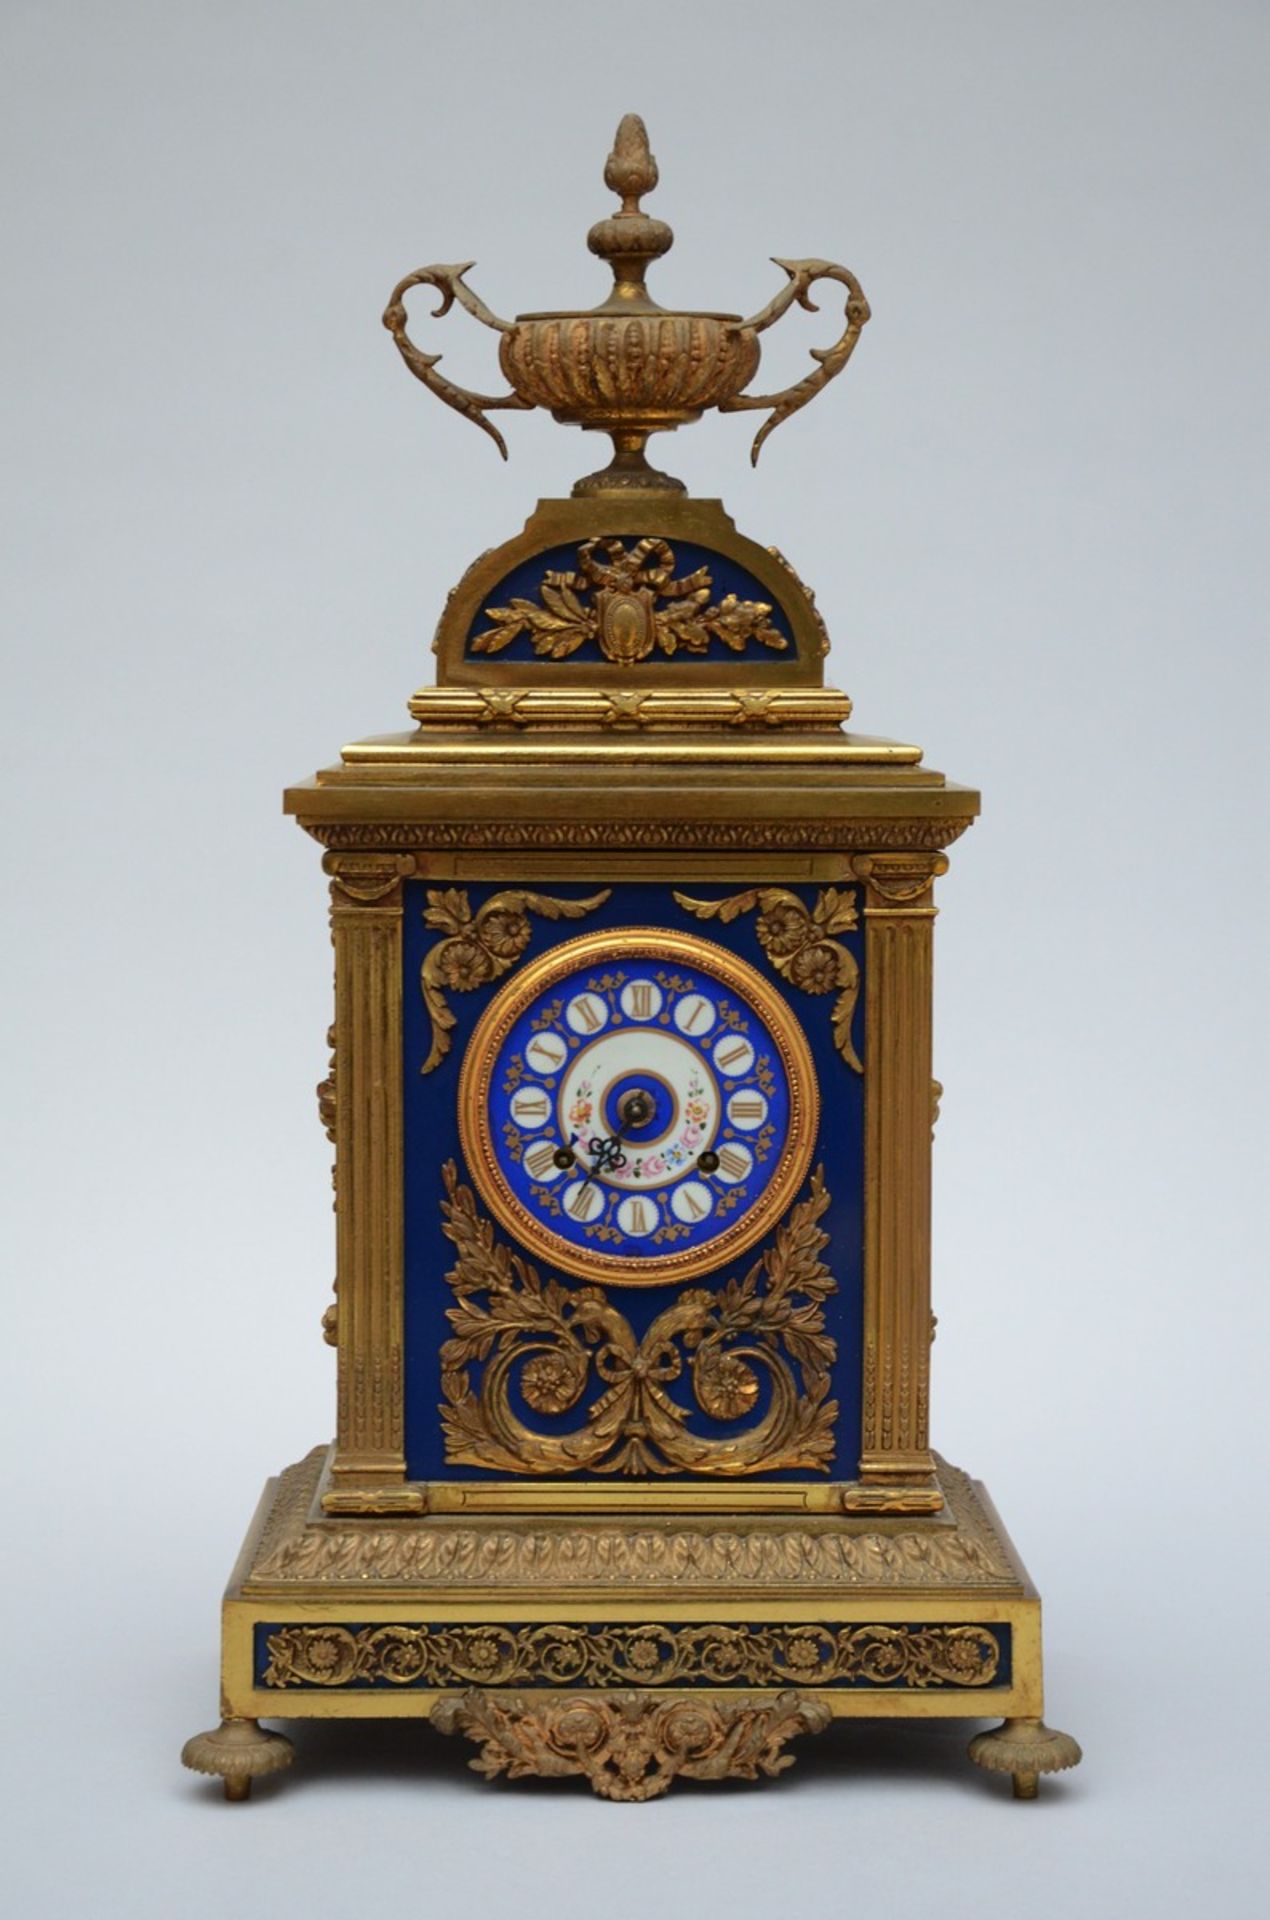 Louis XVI style clock with porcelain plaques (57x30x21cm) (*)